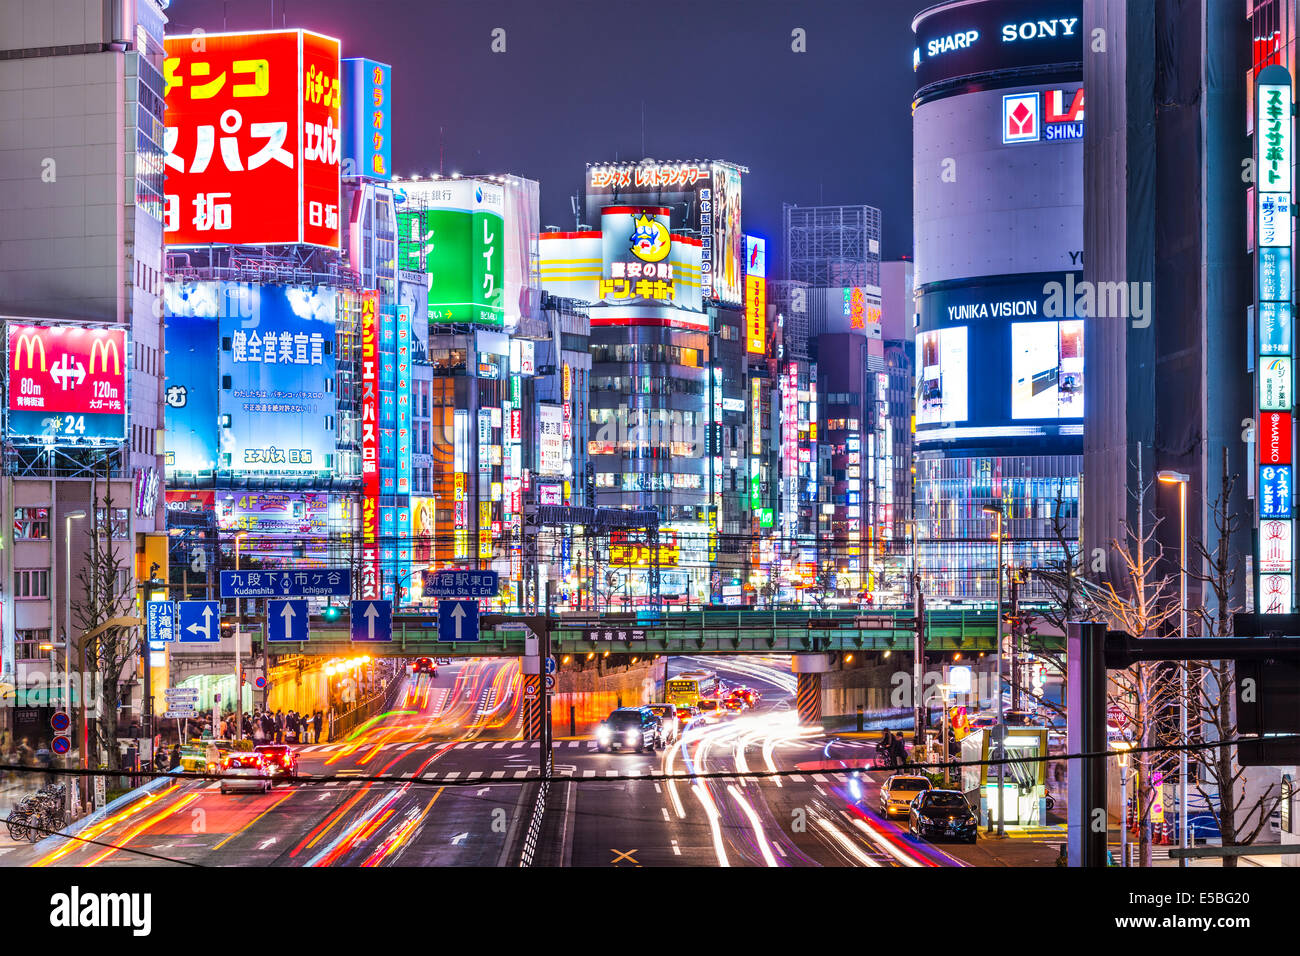 TOKYO, JAPAN - 19. März 2014: Shinjuku Bezirk nachts beleuchtet. Der Bezirk ist bekannt Nacht Lebenszentrum. Stockfoto